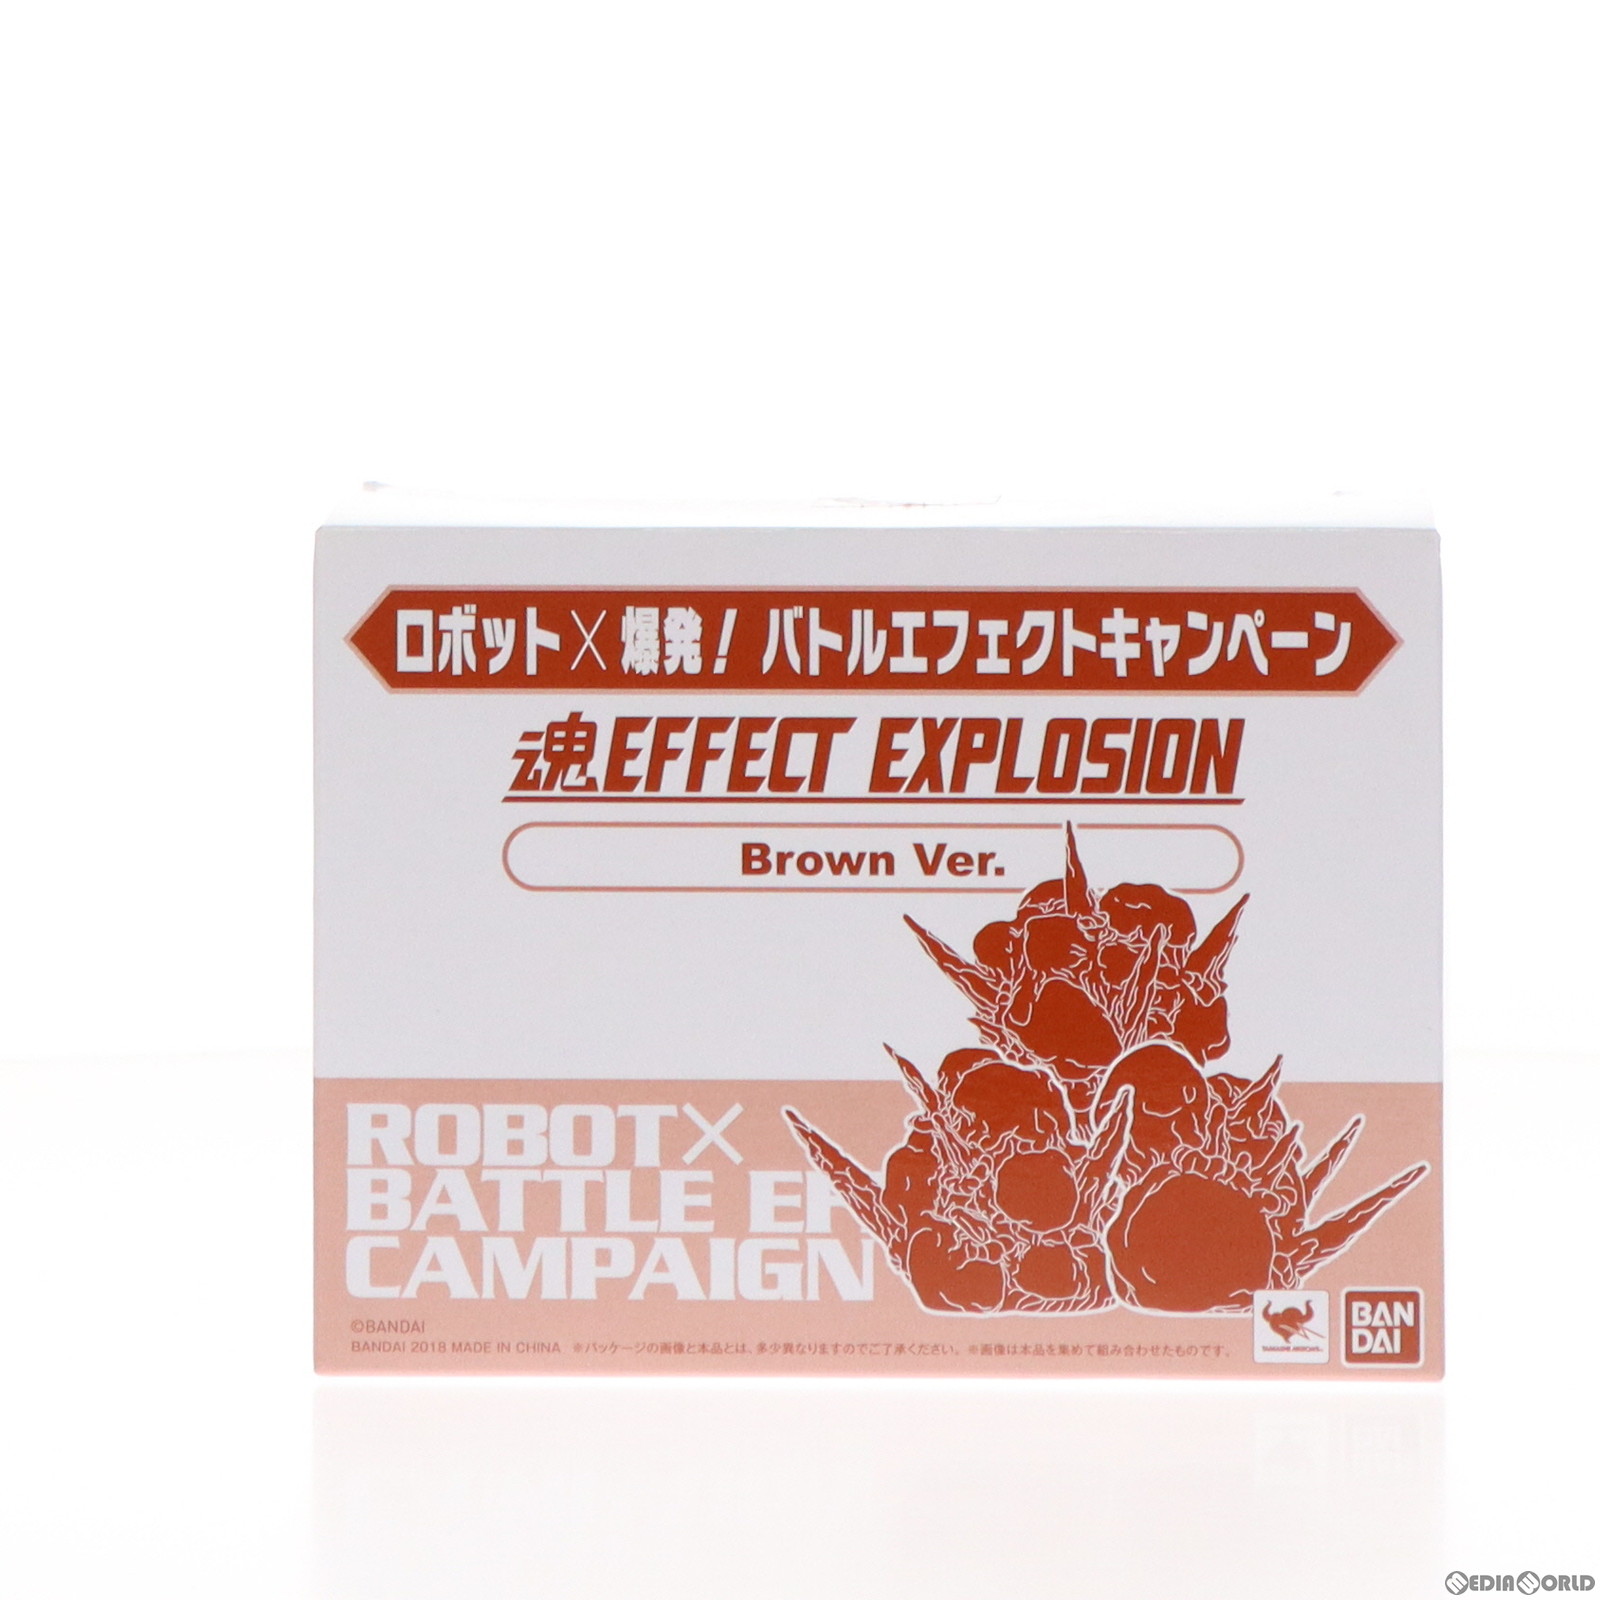 【中古即納】[FIG]魂EFFECT(エフェクト) EXPLOSION(形状3) Brown Ver. ロボット×爆発! バトルエフェクトキャンペーン配布品 フィギュア